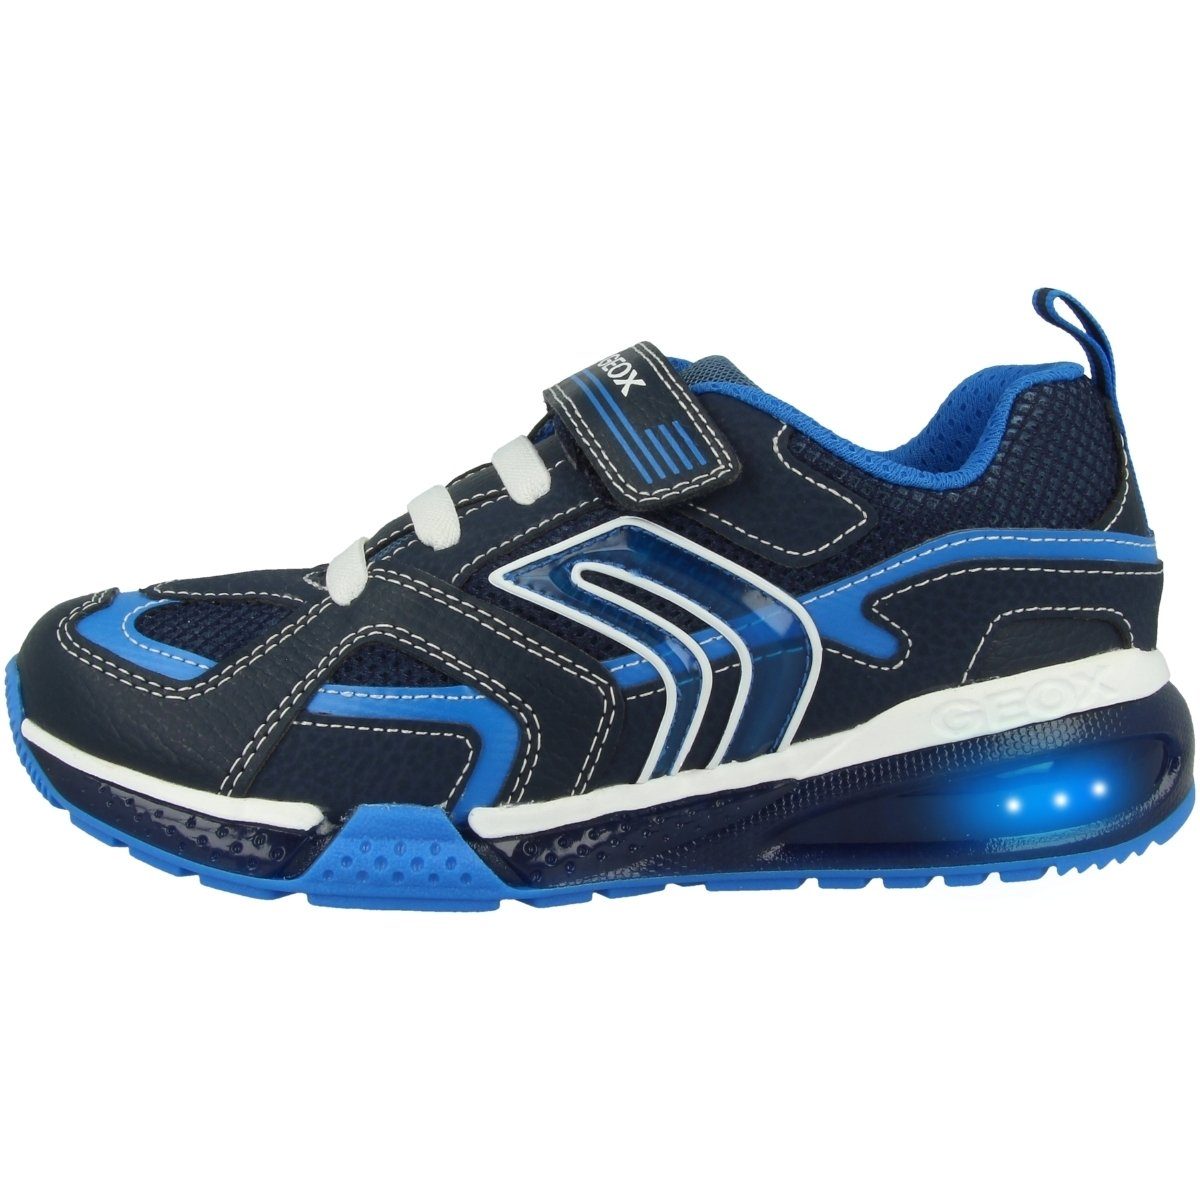 Geox J Bayonyc B. A Unisex Kinder Sneaker LED Funktion blau